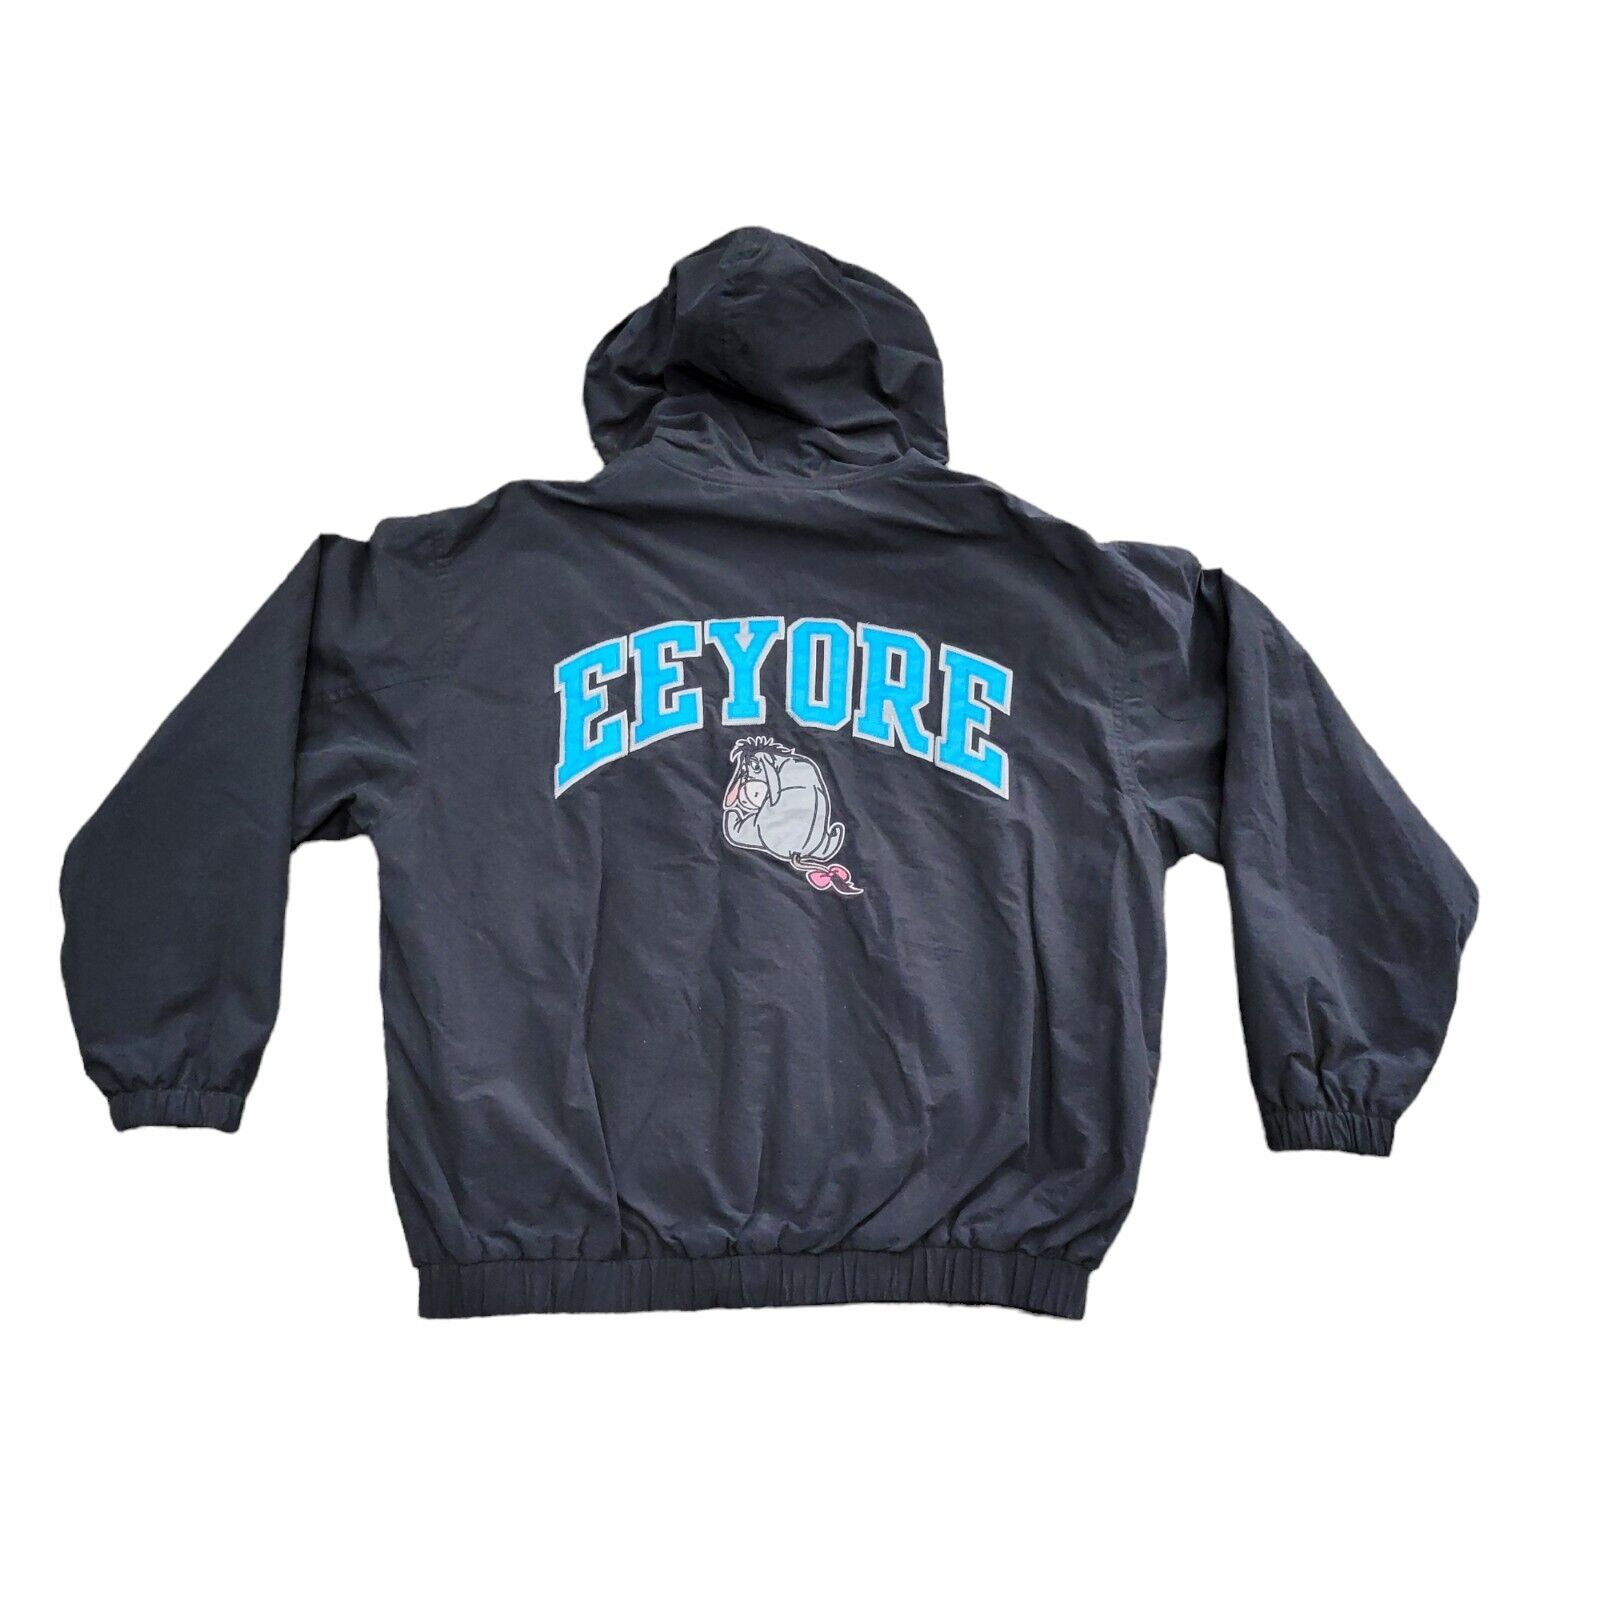 Vintage Walt Disney World Eeyore Black Full Zip Hooded Bomber Jacket Adult M